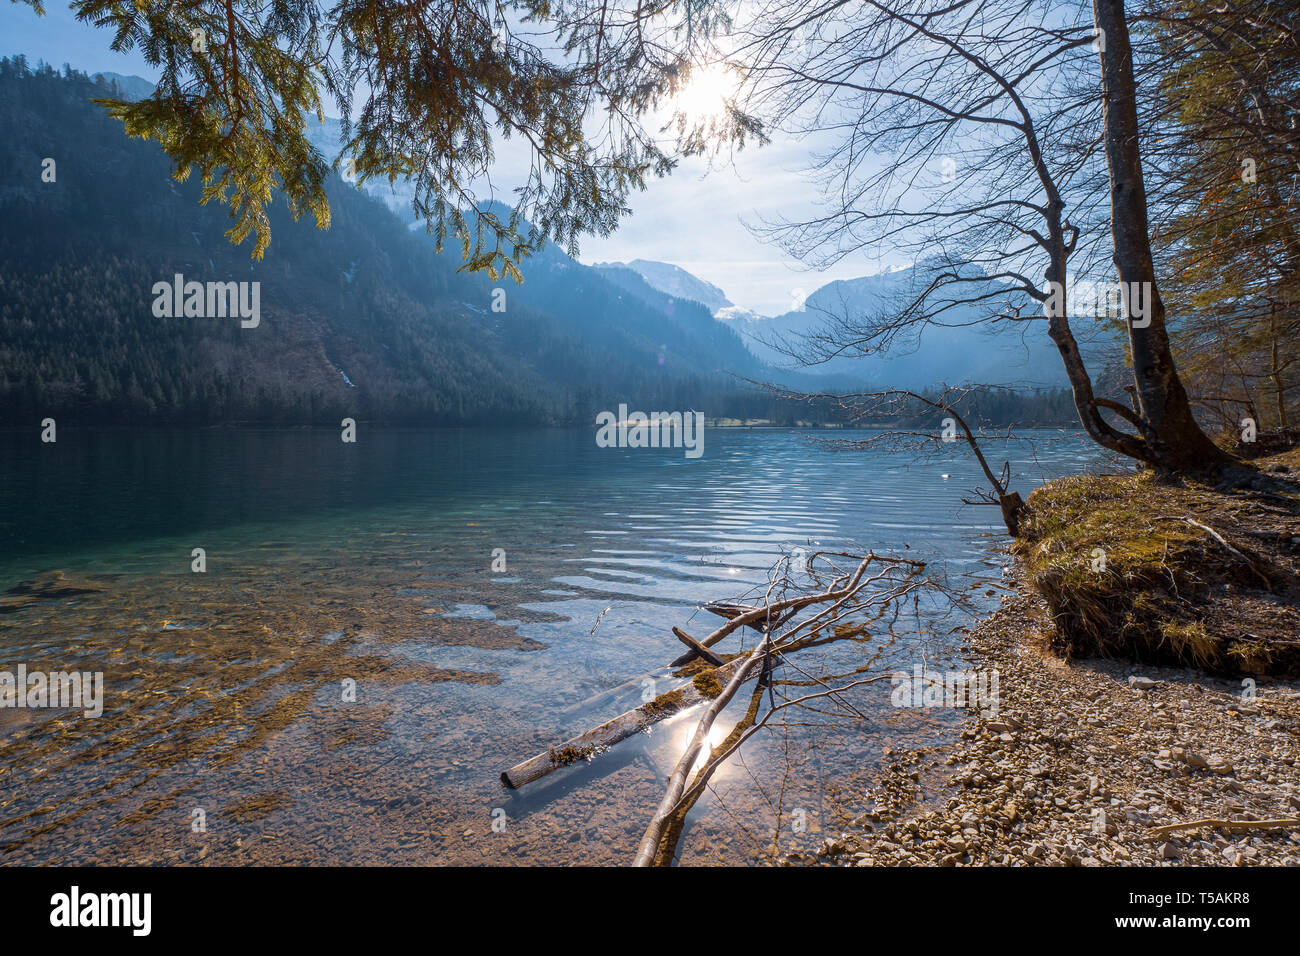 Malerischer Blick auf die großartige Landschaft auf dem flachen das kristallklare Wasser der Vorderer Langbathsee in der Nähe von Ebensee, Oberösterreich, Österreich widerspiegelt Stockfoto